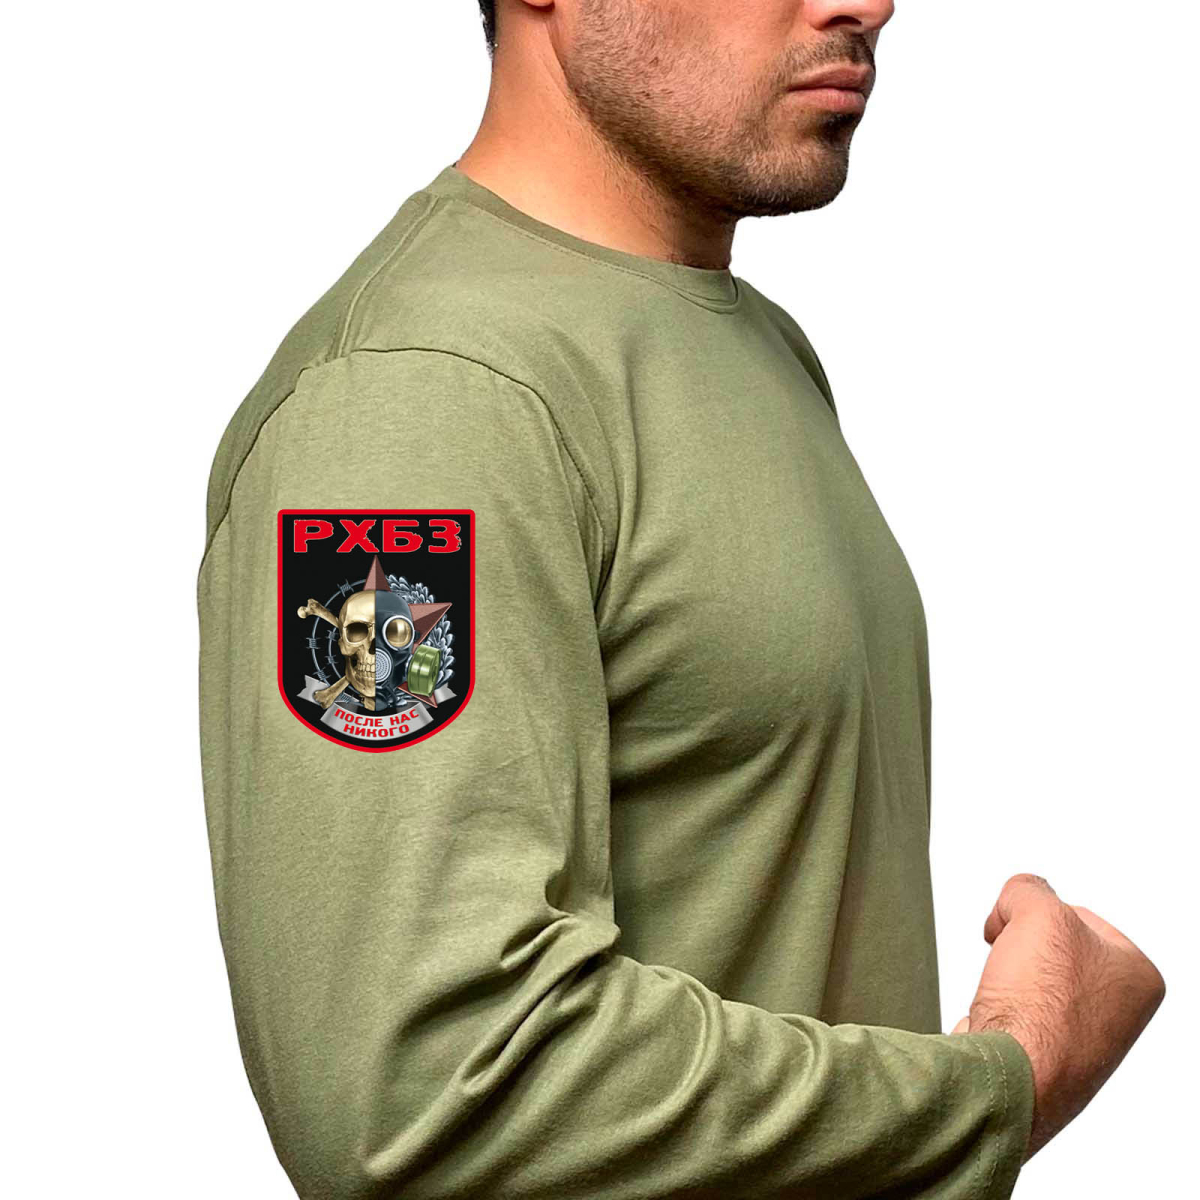  Оливковая футболка с длинным рукавом с термоаппликацией РХБЗ Оливковая футболка с длинным рукавом с термоаппликацией РХБЗ 